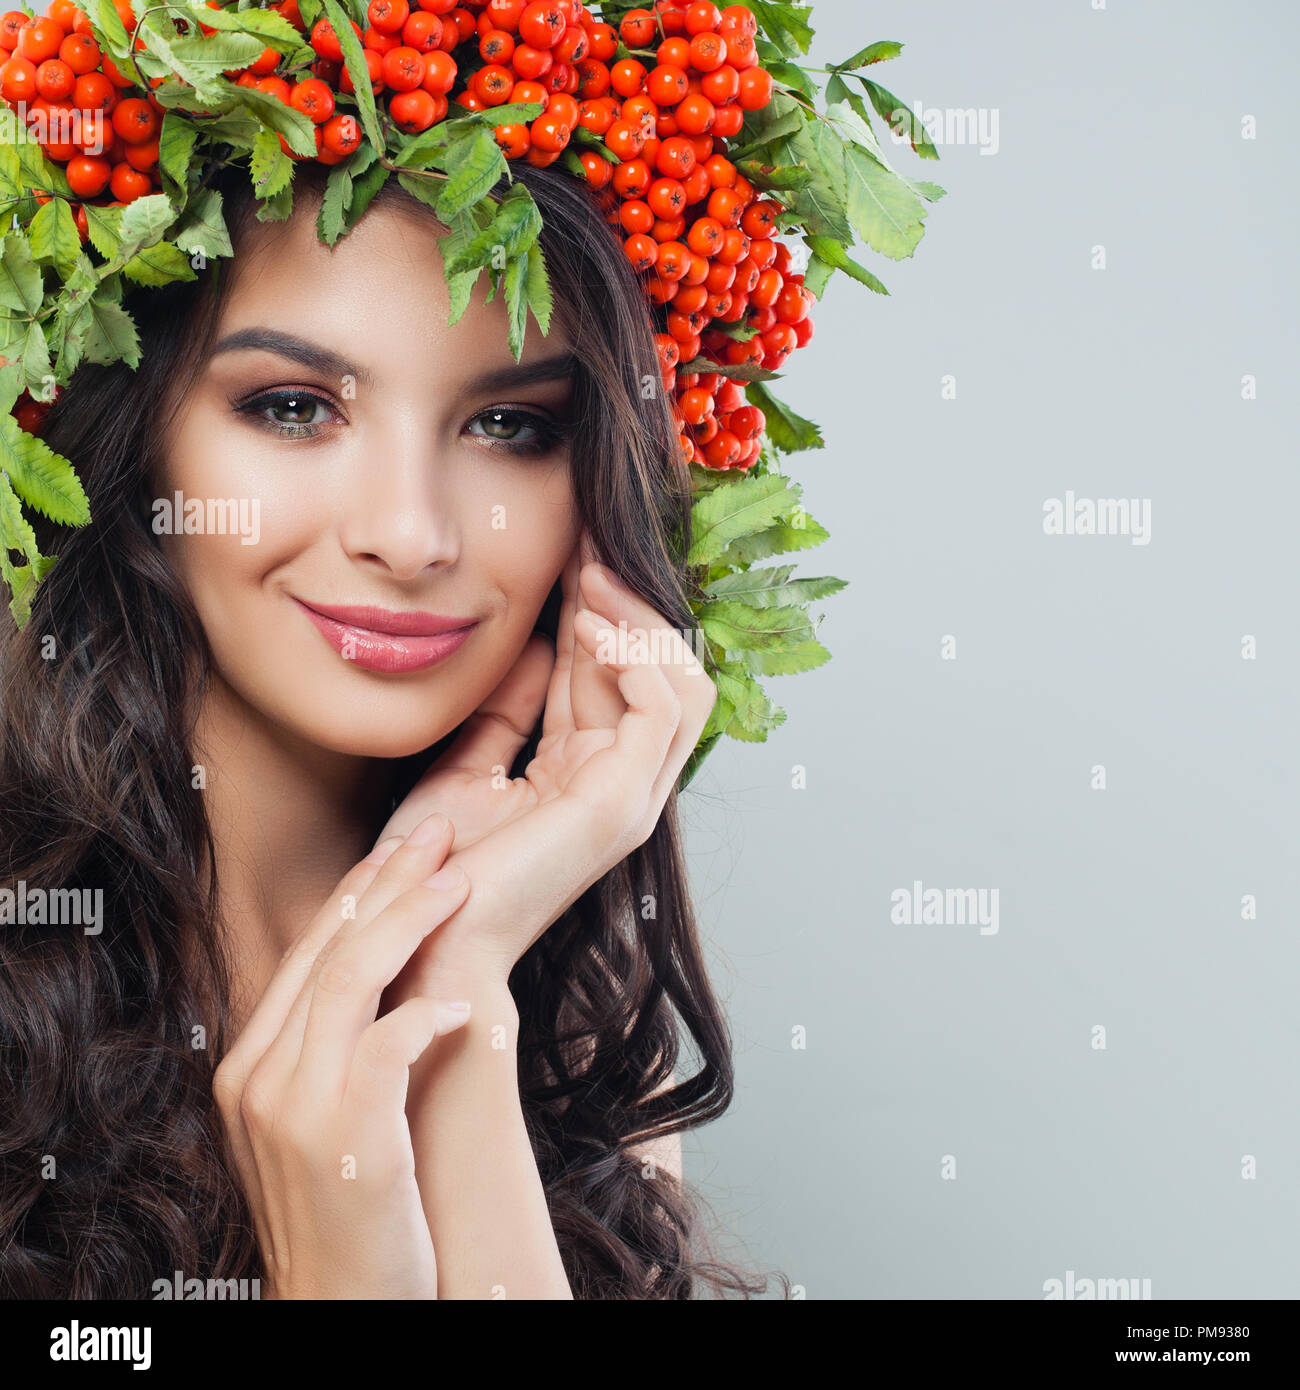 Junge hübsche Frau mit langen gewelltes Haar, gesunde Haut und rote Beeren und Blätter Kranz Stockfoto